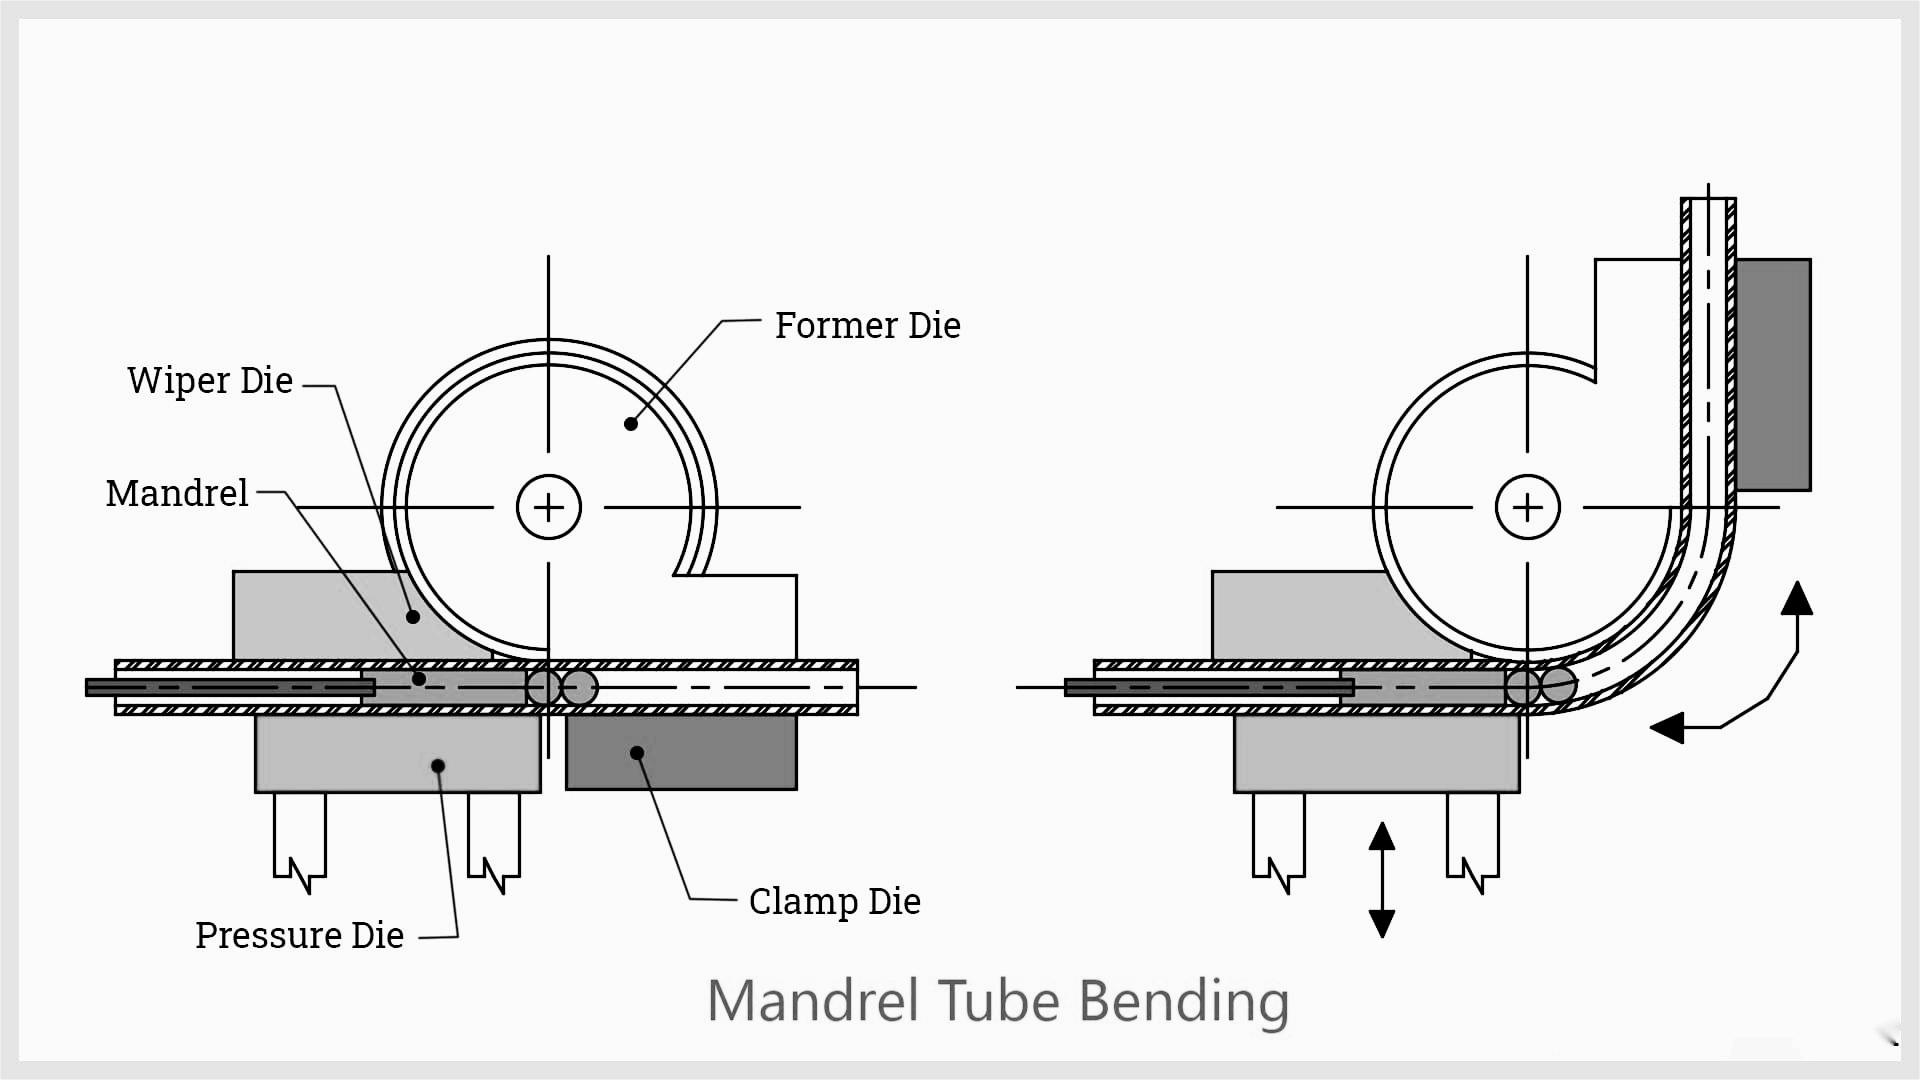 Mandrel Tube Bending